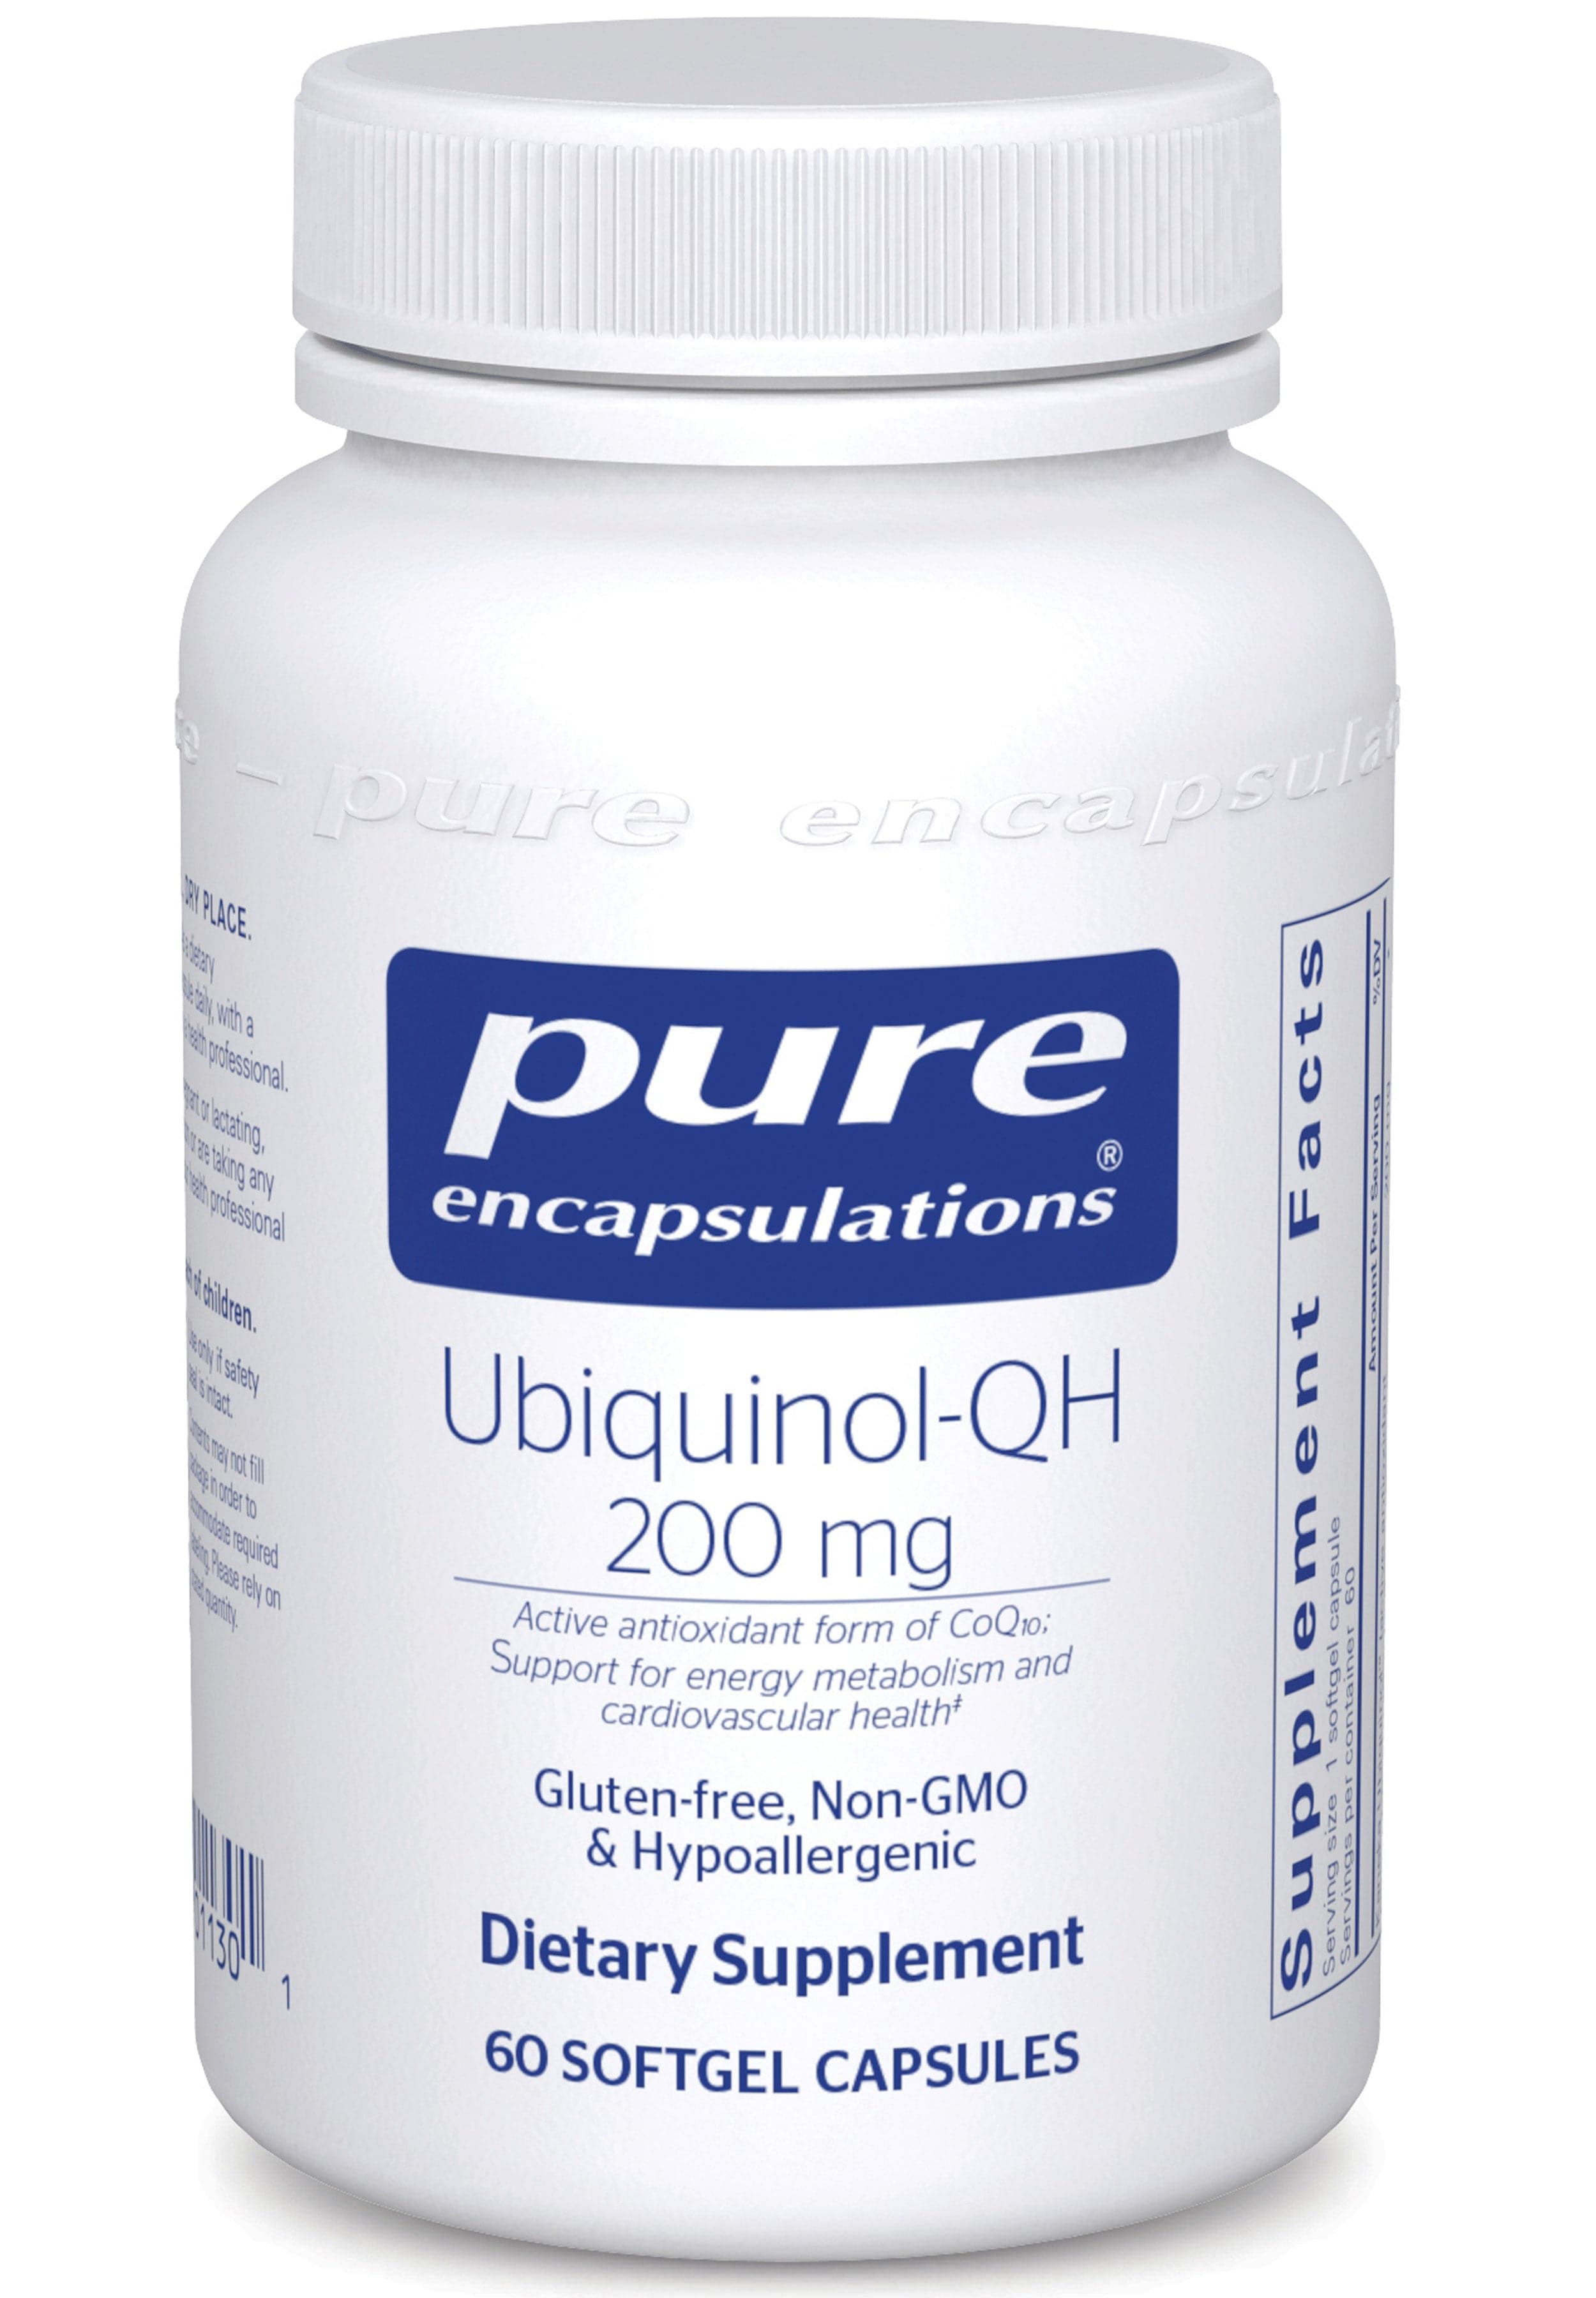 Pure Encapsulations Ubiquinol-QHPure Encapsulations Ubiquinol-QH 200mg